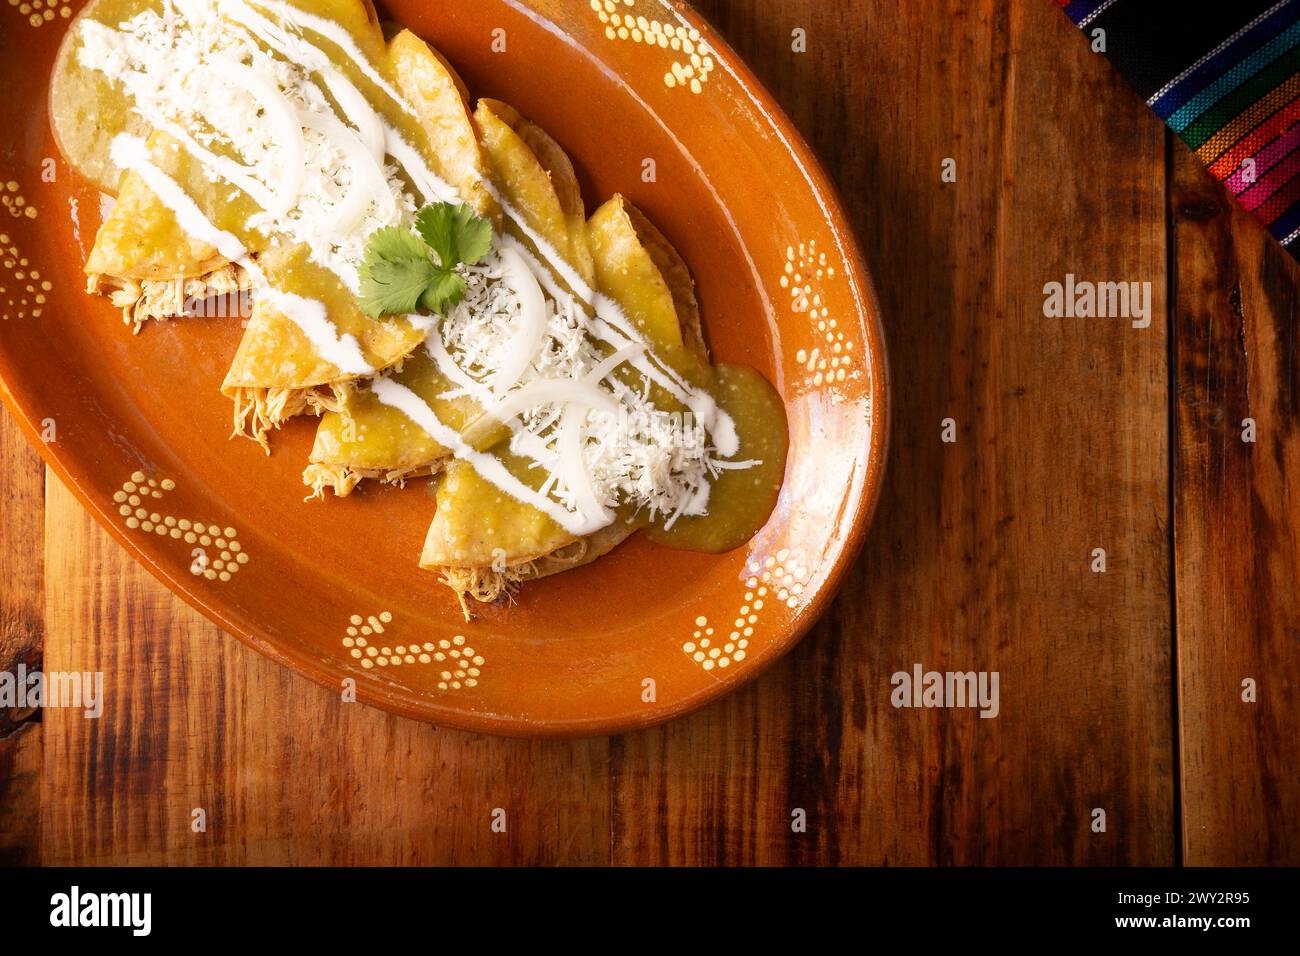 Enchiladas vertes. Plat mexicain typique fait avec une tortilla de maïs pliée ou roulée remplie de poulet râpé et recouverte de sauce verte épicée, cre Banque D'Images